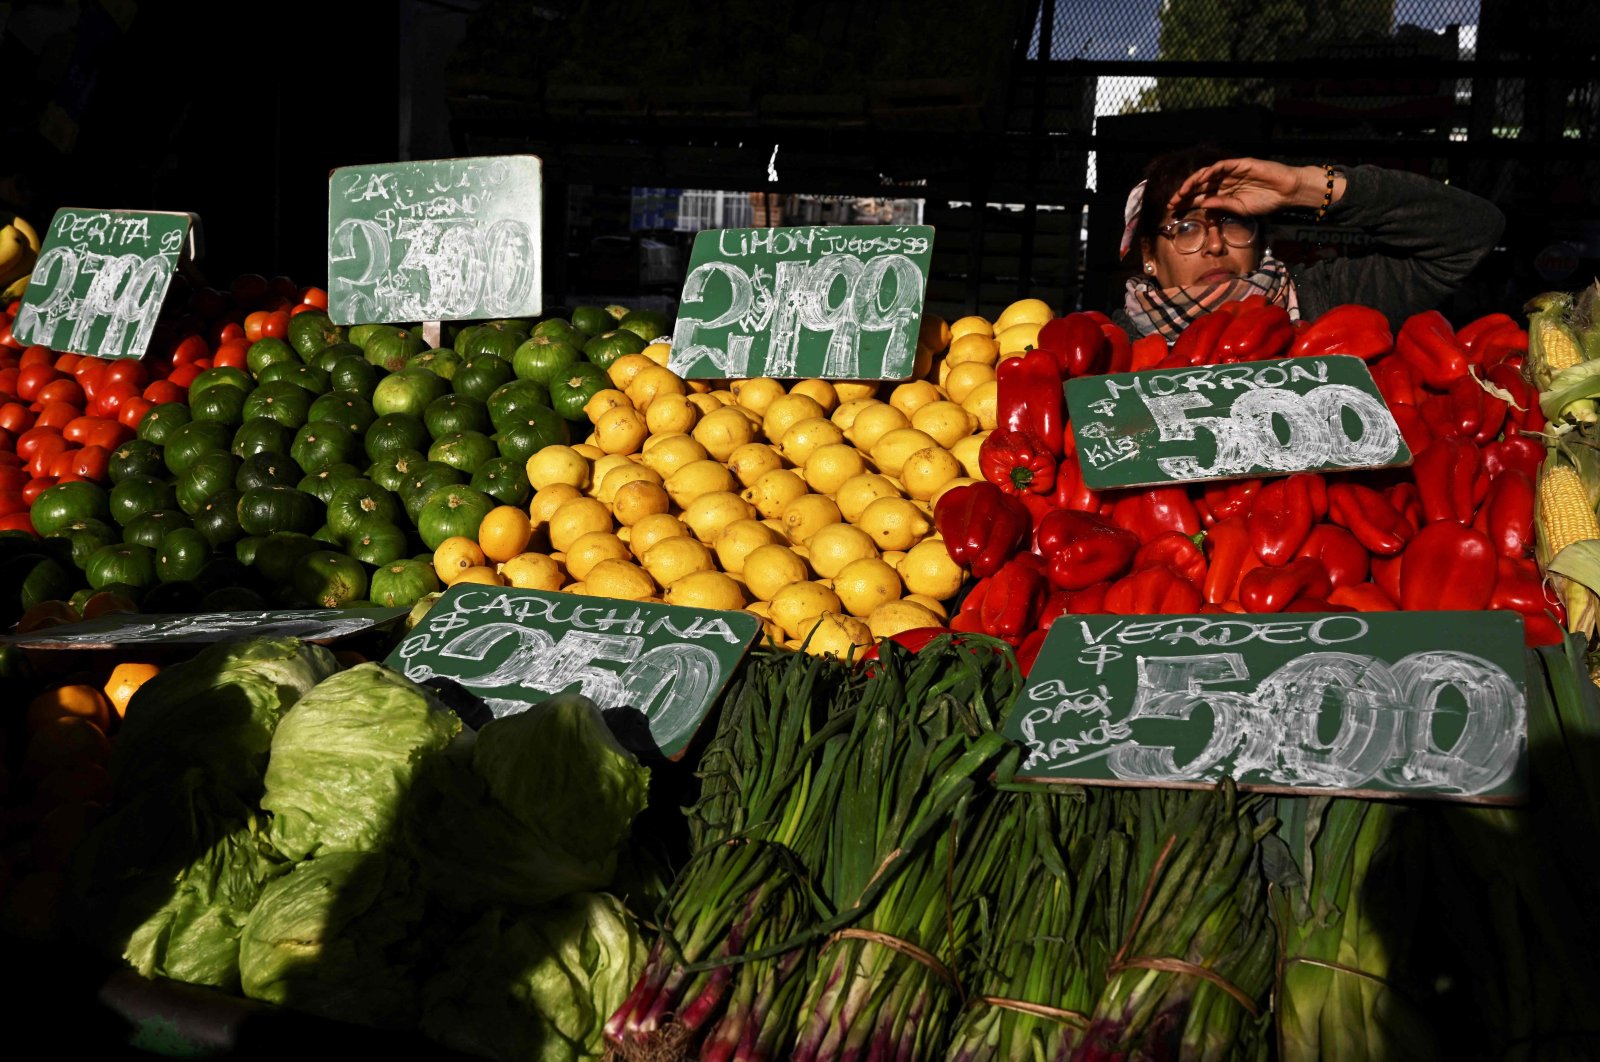 Harga pangan global turun ke level terendah 2 tahun di bulan Mei: badan pangan PBB